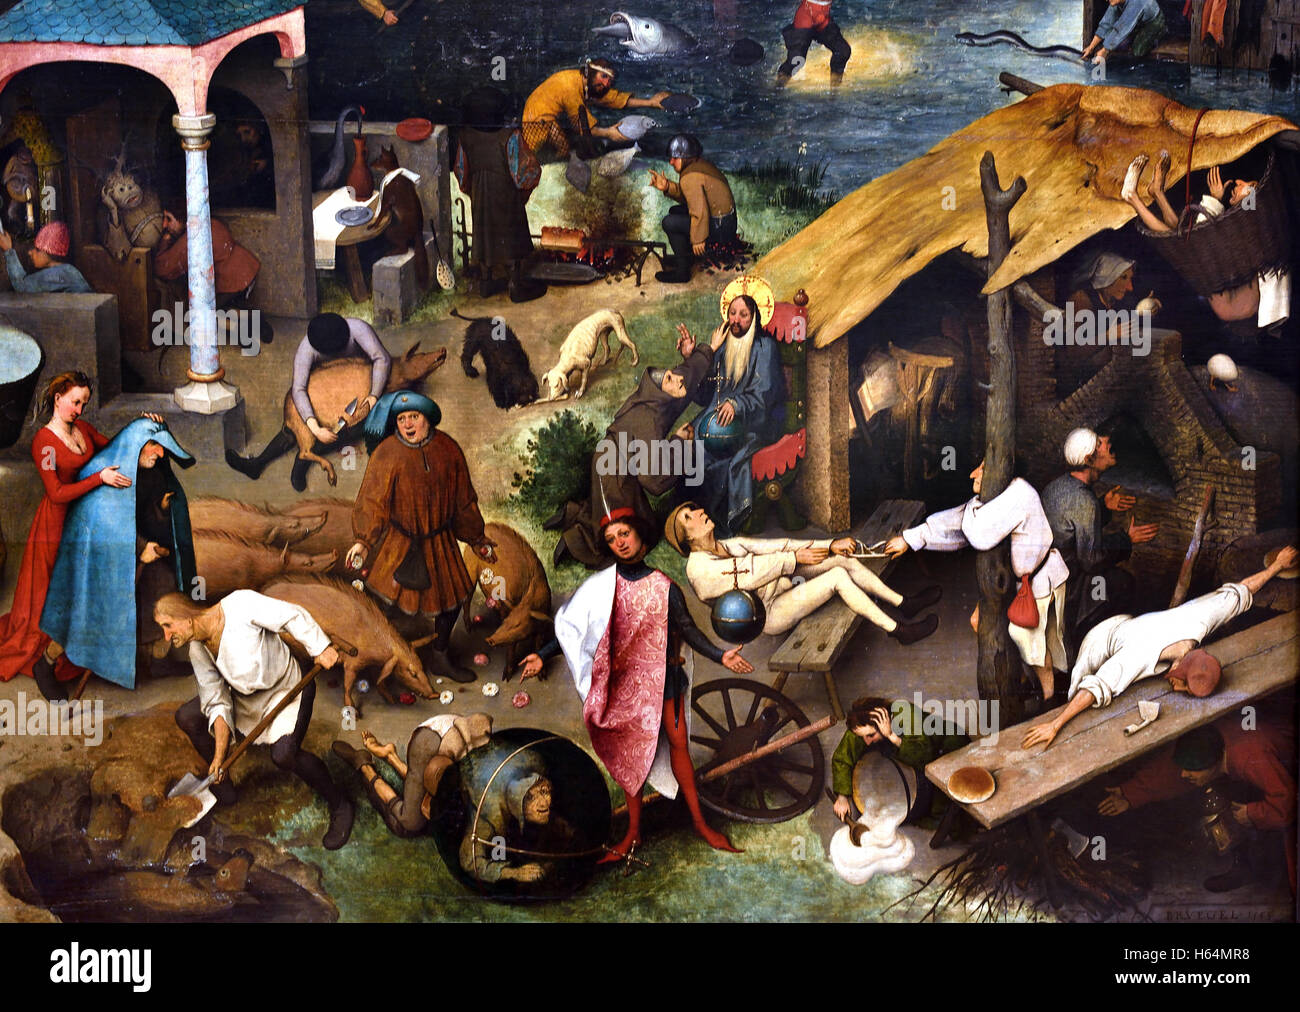 Les proverbes néerlandais Pieter Brueghel 1559 Bruegel ( ) l'Aîné Breda1525 - 1569 Bruxelles Belgique Belge Flamand Néerlandais Pays-Bas Medieval Moyen Age Banque D'Images